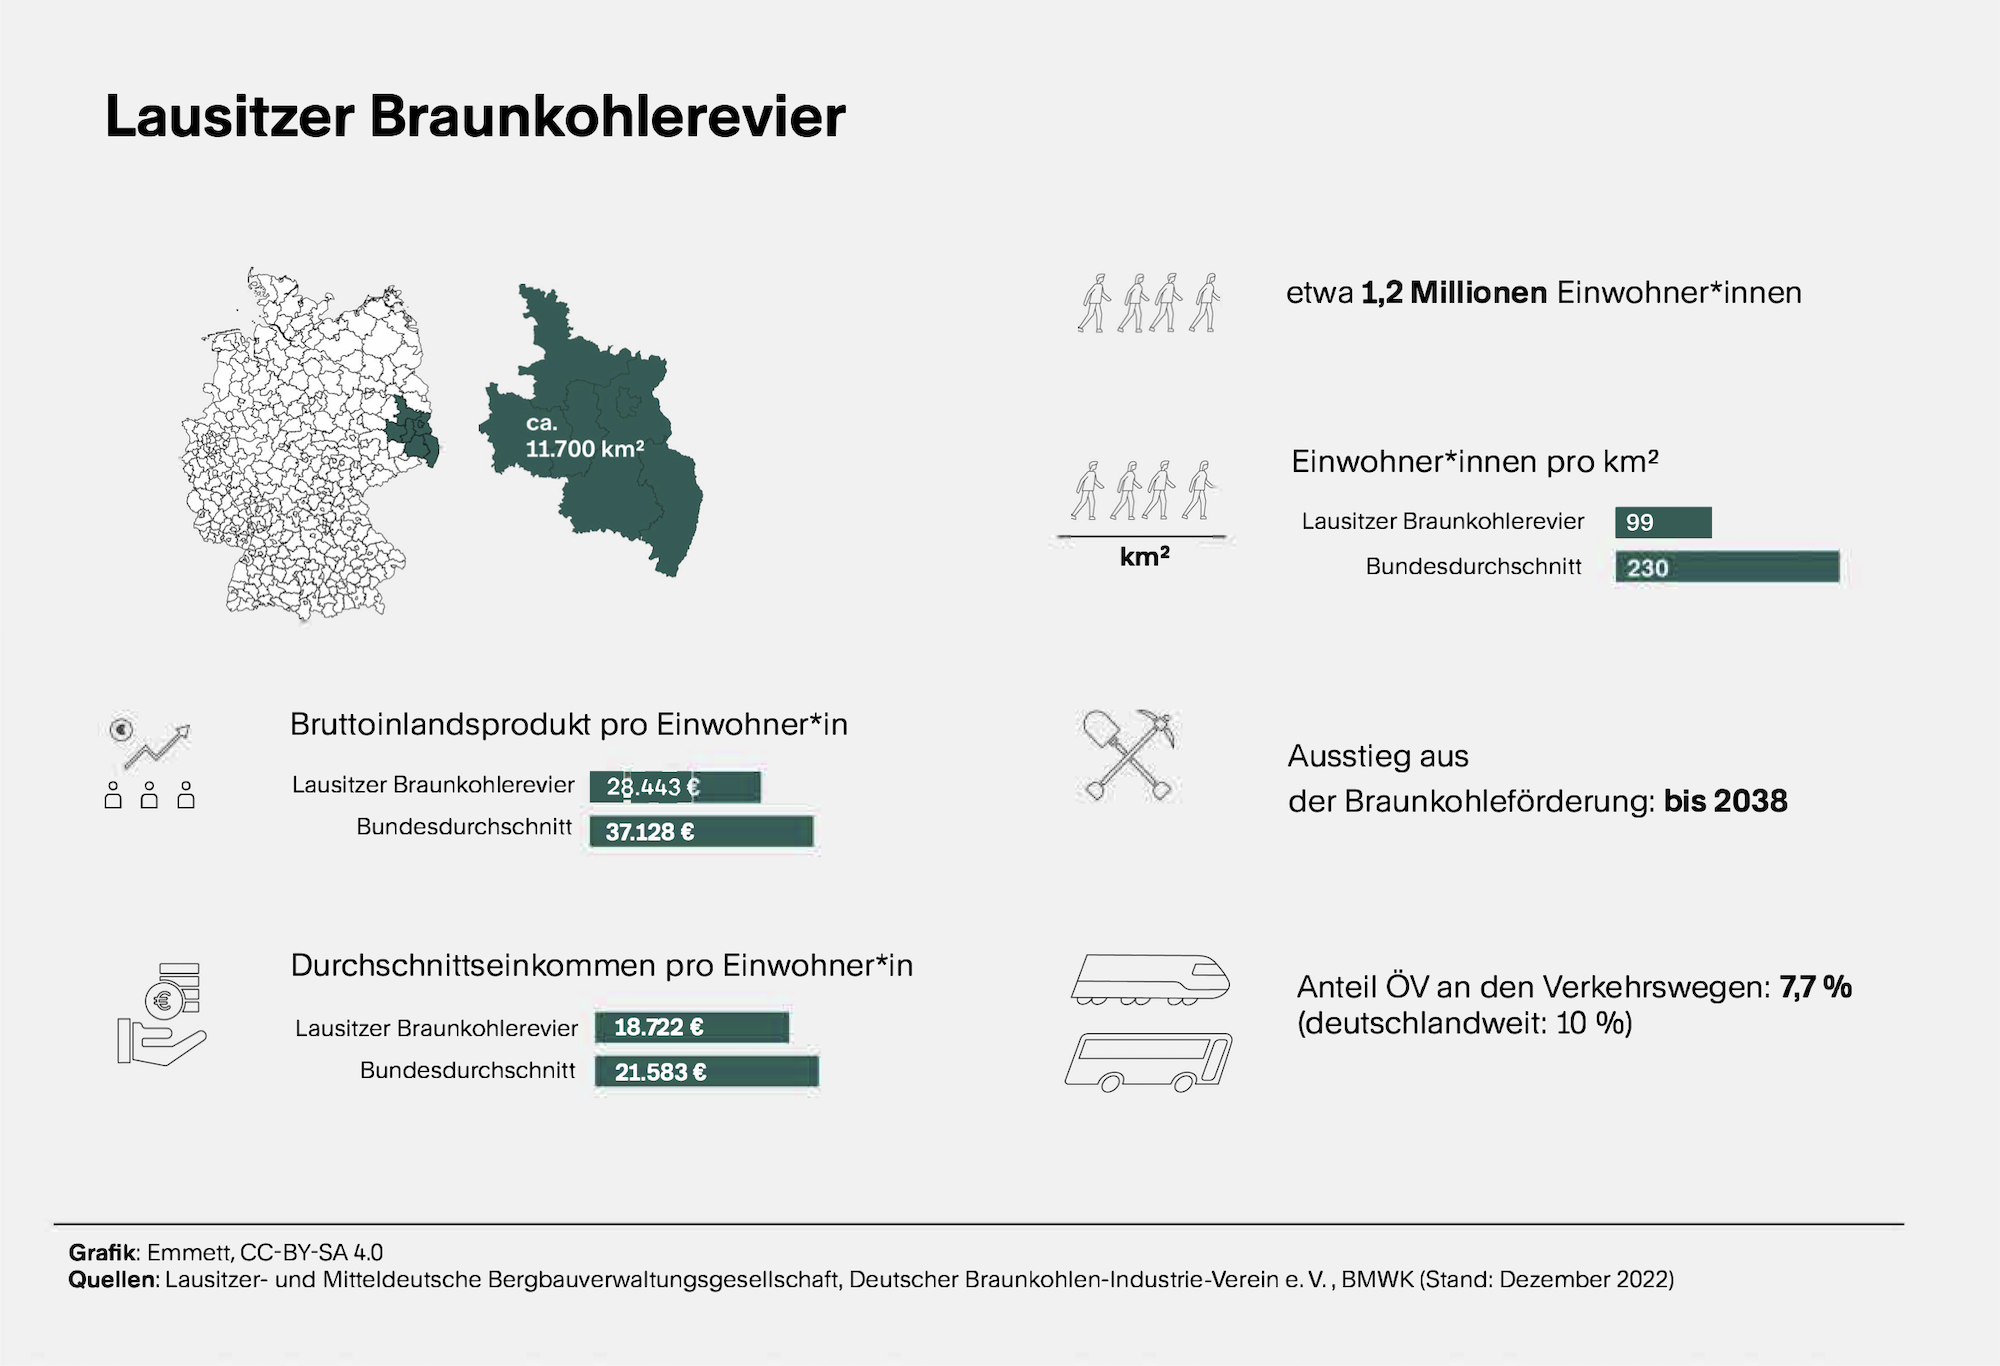 Mehrere kleine Grafiken plus Text. Sie informieren über demographische Daten zum Lausitzer Braunkohlerevier, auch zum Anteil des öffentlichen Verkehrs an den Verkehrswegen in dem Gebiet